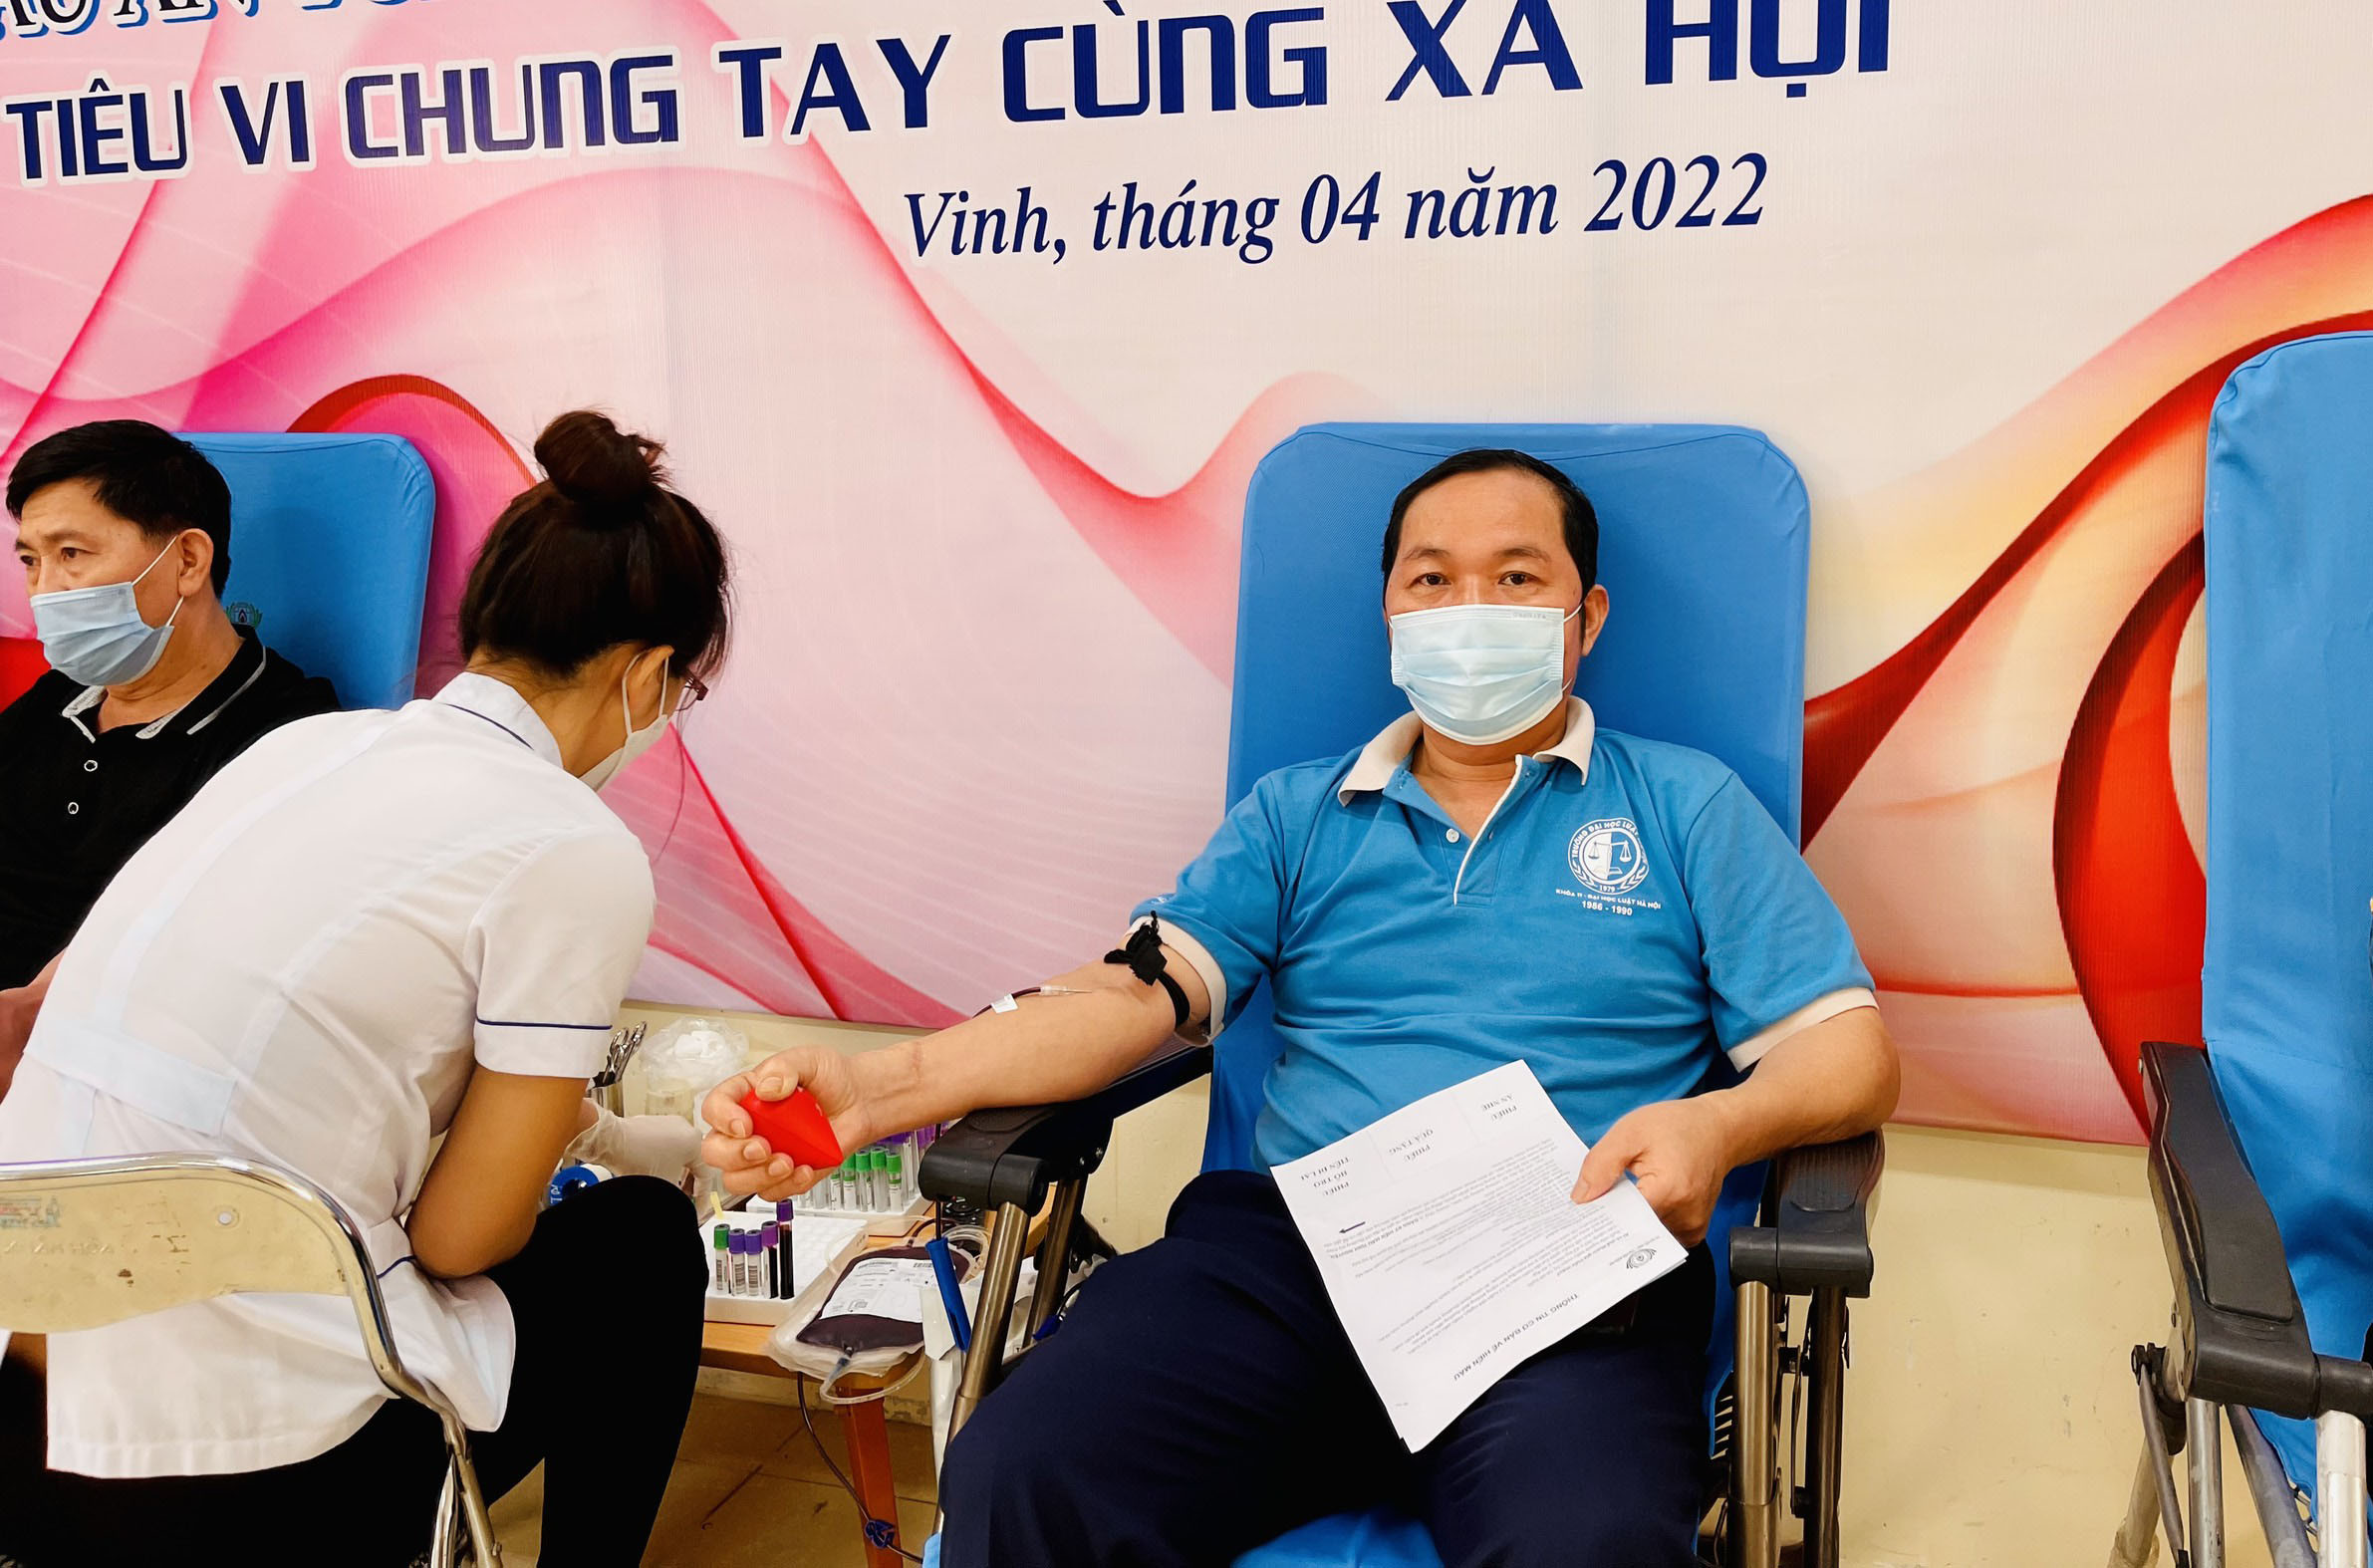 Đồng chí Trần Ngọc Sơn - Ủy viên BCH Đảng bộ tỉnh, Chánh án TAND tỉnh Nghệ An tham gia hiến máu. Ảnh: Lý Dương